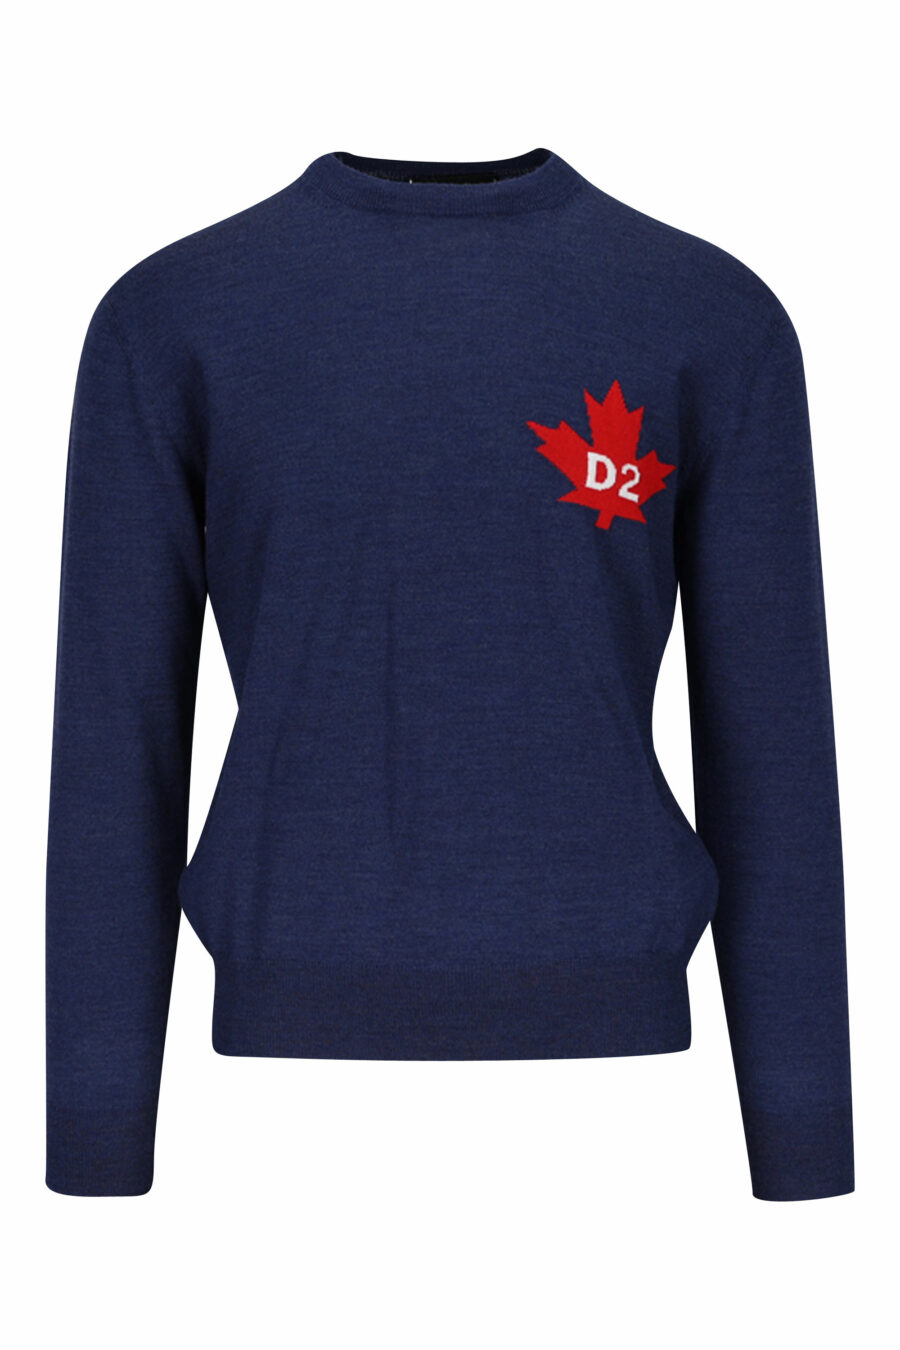 Blauer Pullover mit Mini-Logo "D2" auf dem Blatt - 8054148057985 2